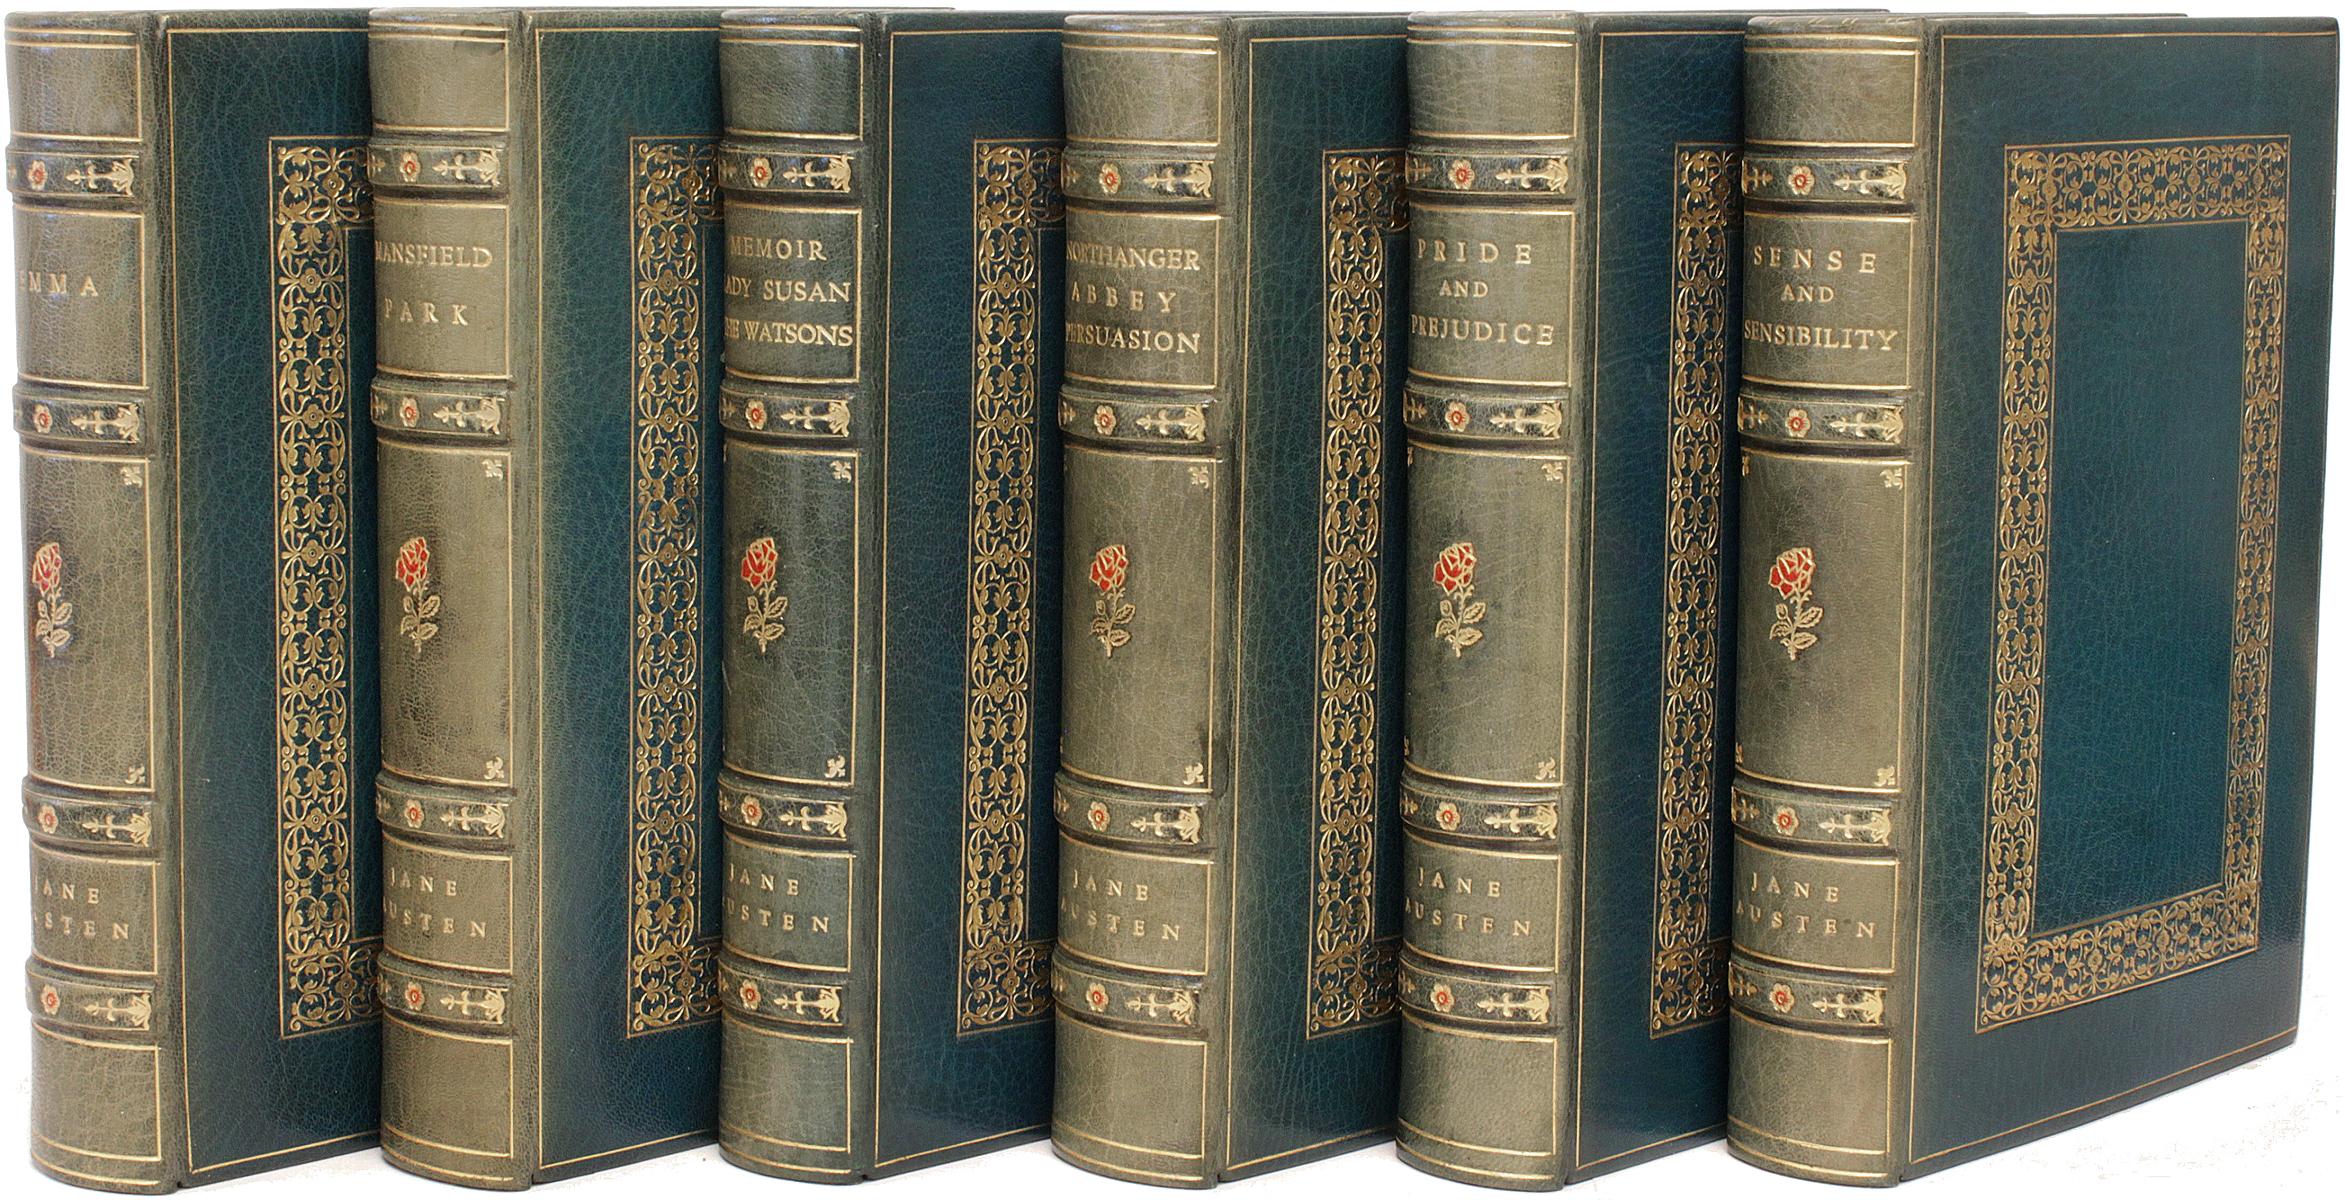 AUTHOR: AUSTEN, Jane. 

TITLE: The Complete Works Of Jane Austen.

PUBLISHER: London: Richard Bentley and Son, 1882.

DESCRIPTION: THE STEVENTON EDITION. 6 vols., 8-1/16